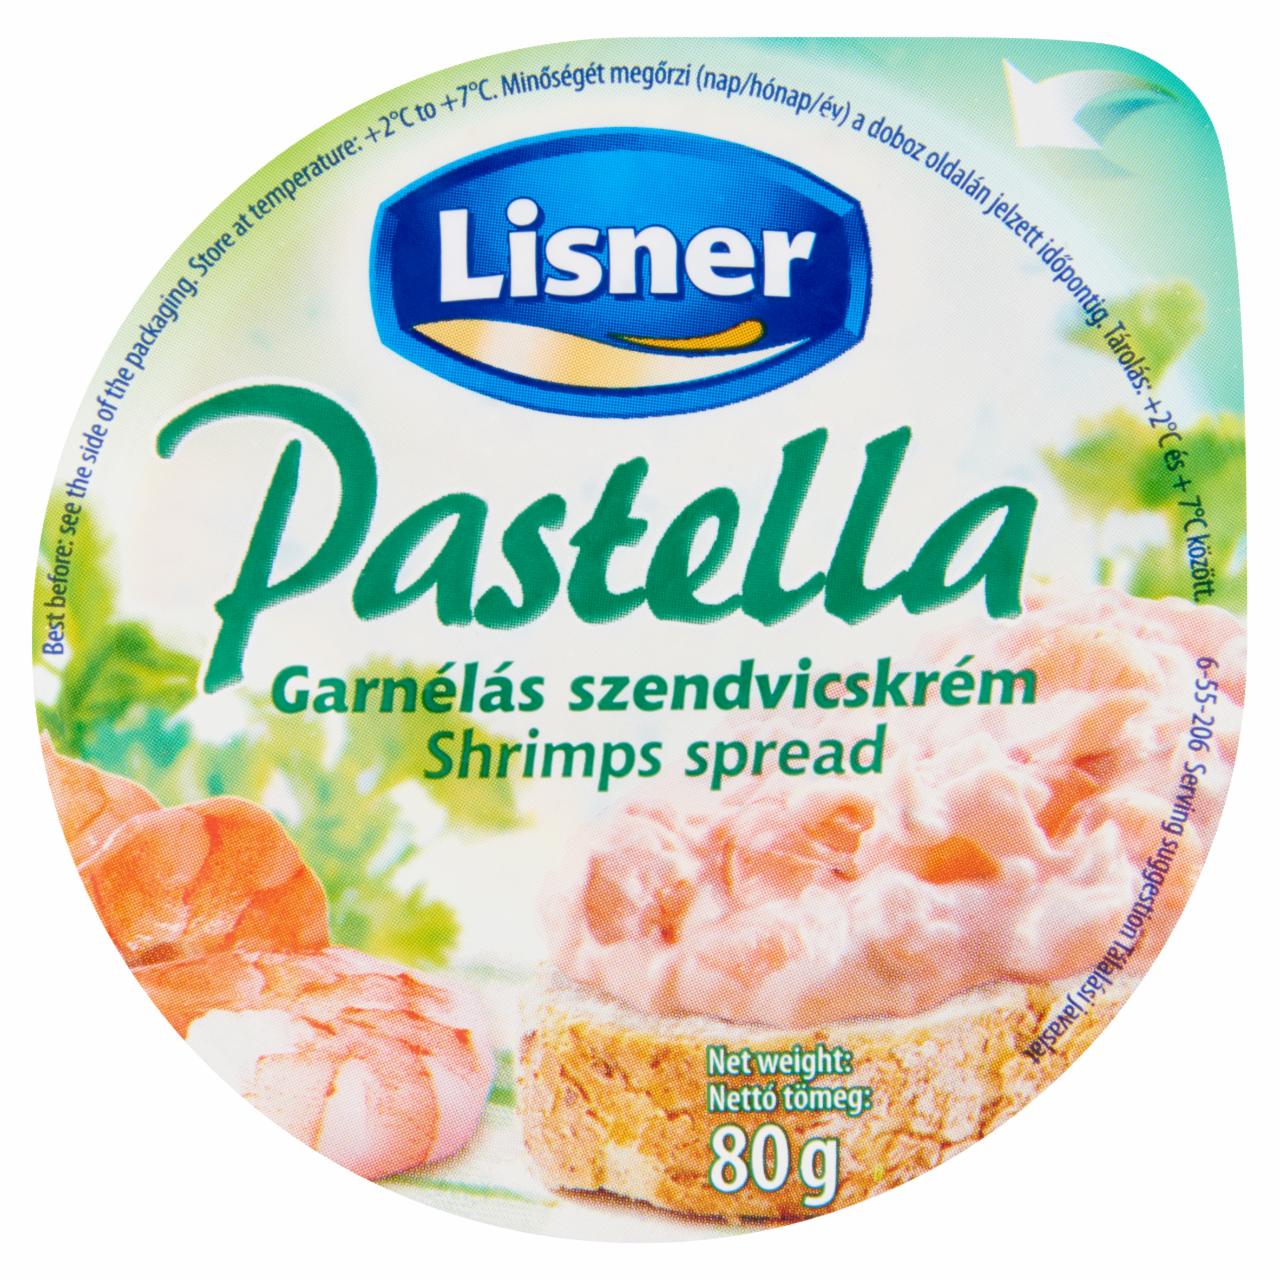 Képek - Lisner Pastella garnélás szendvicskrém 80 g